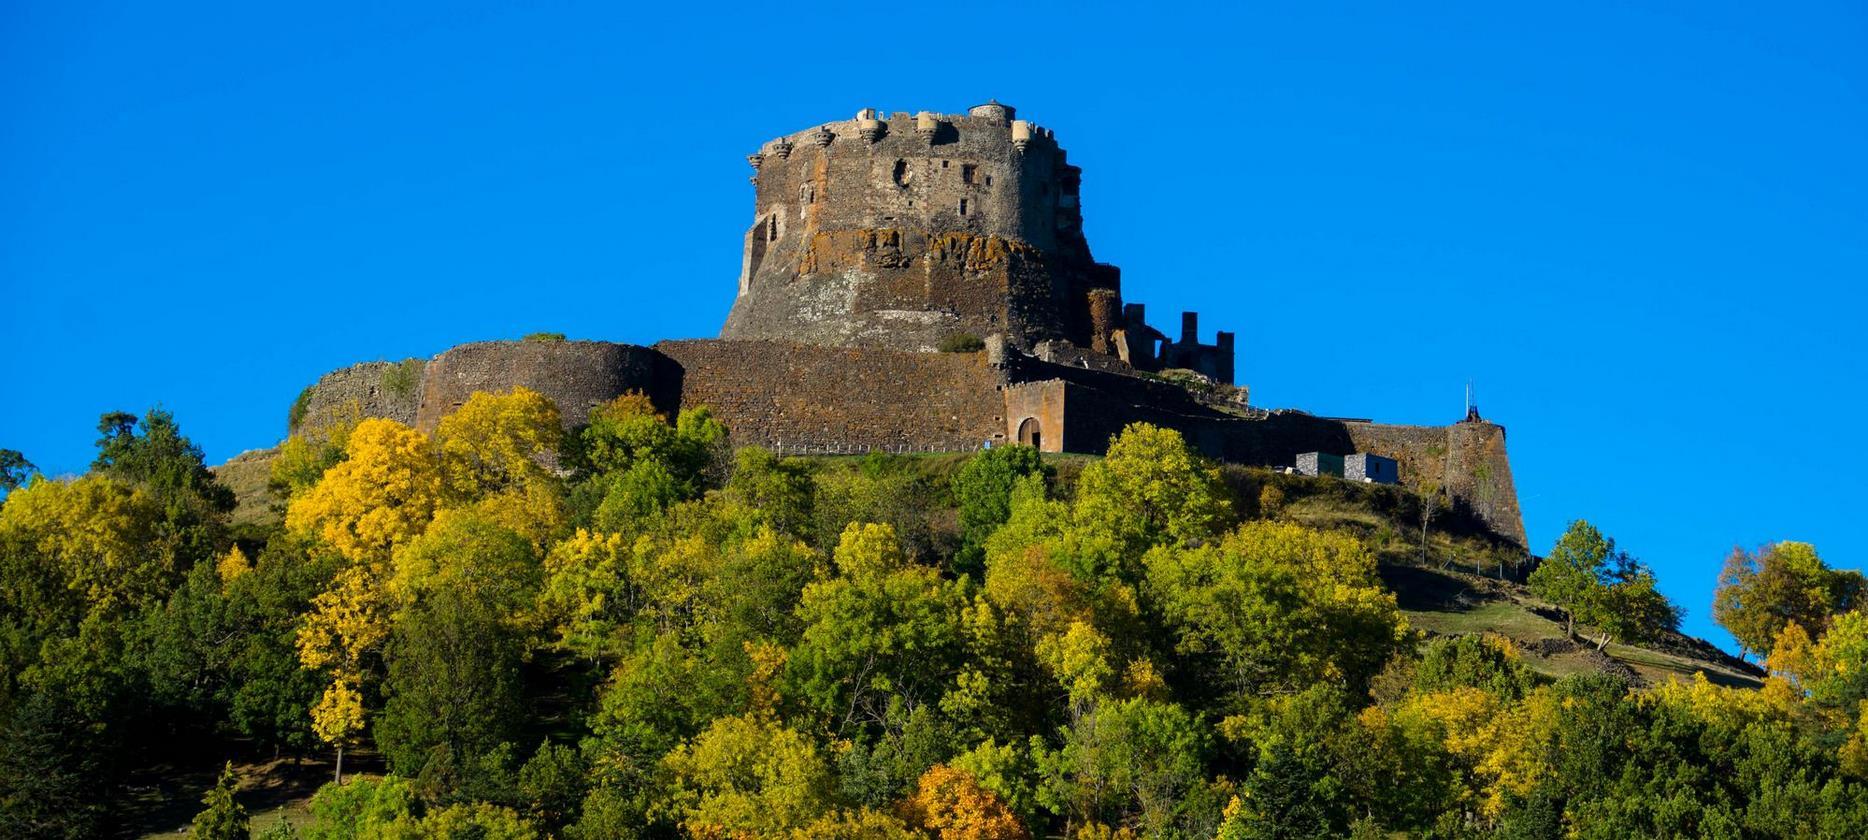 Super Besse - Chateau de Murol, fortified castle overlooking the village of Murol